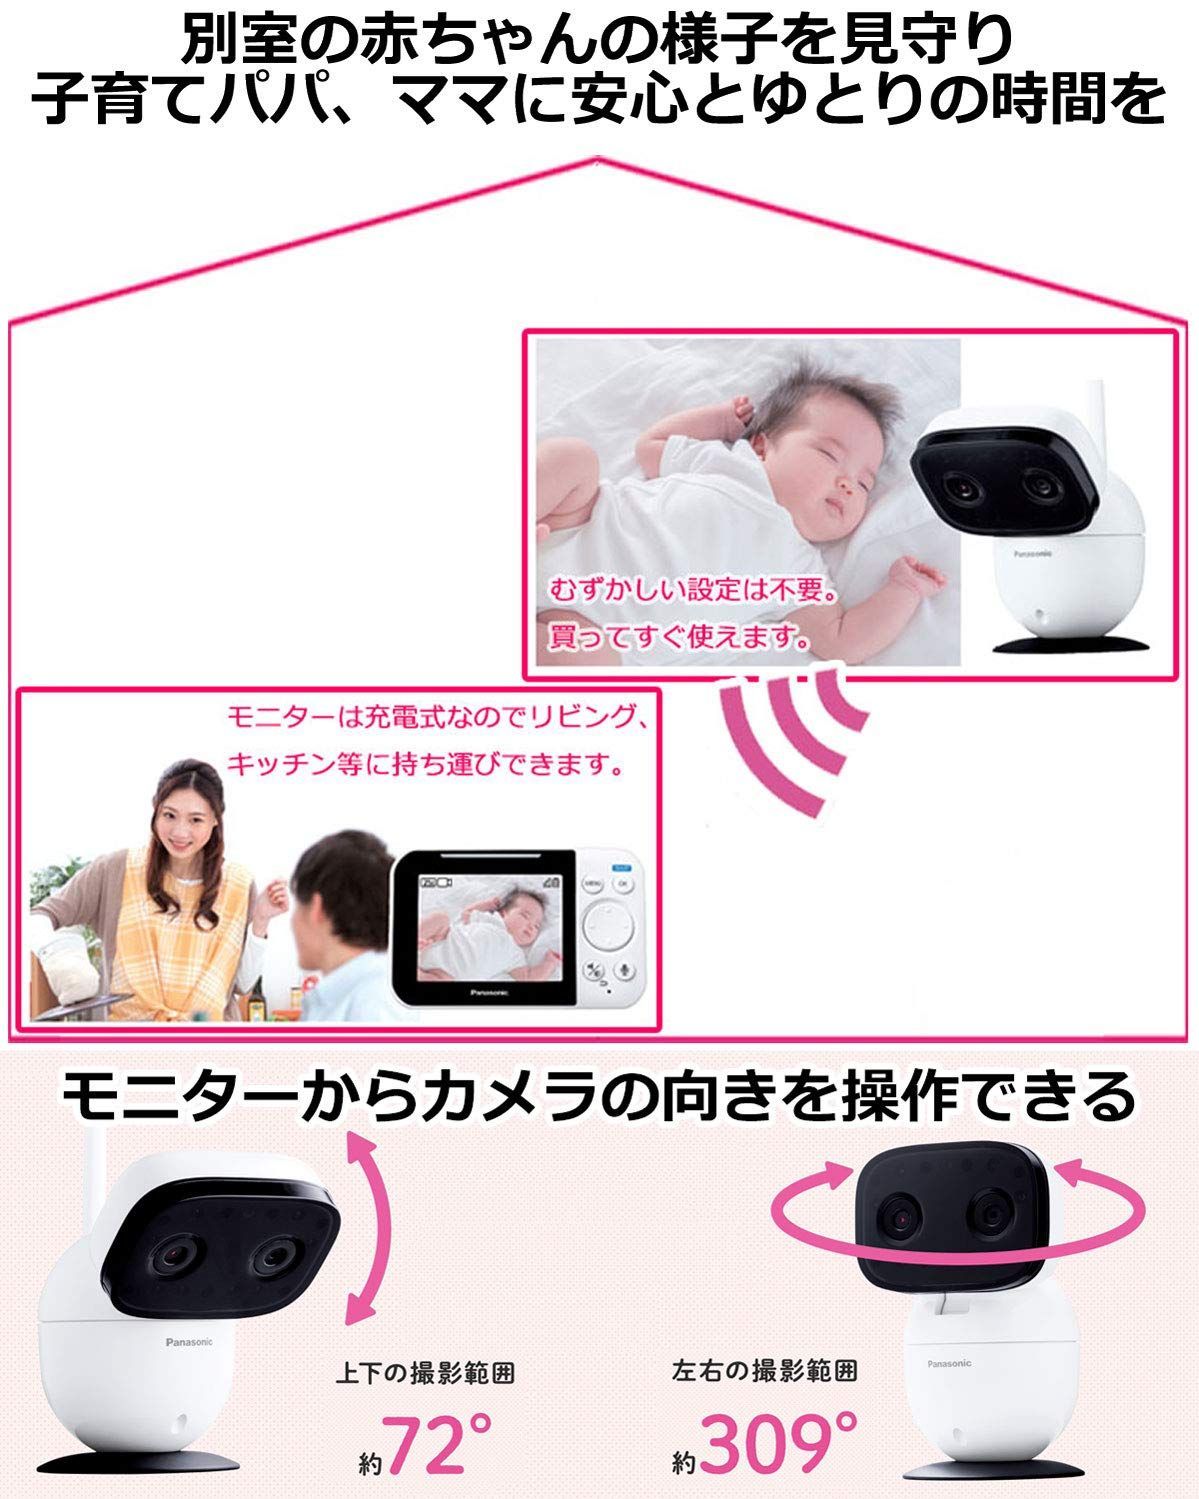 【人気商品】パナソニック モニター付き屋内カメラ スマホーム 設定不要 ベビーモ